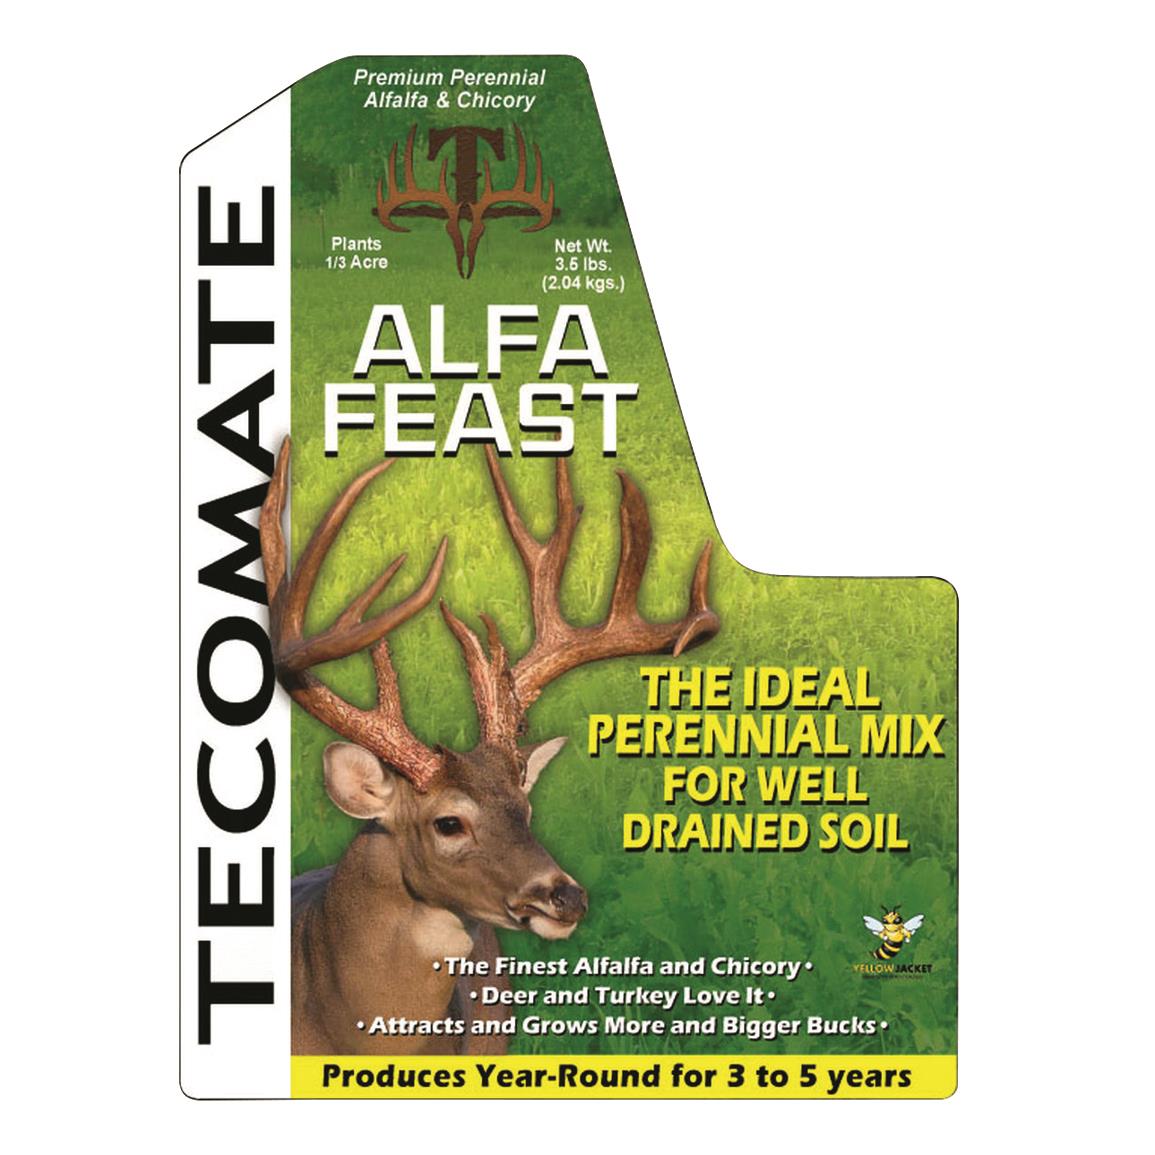 Alfa-Feast is loved by deer and turkeys